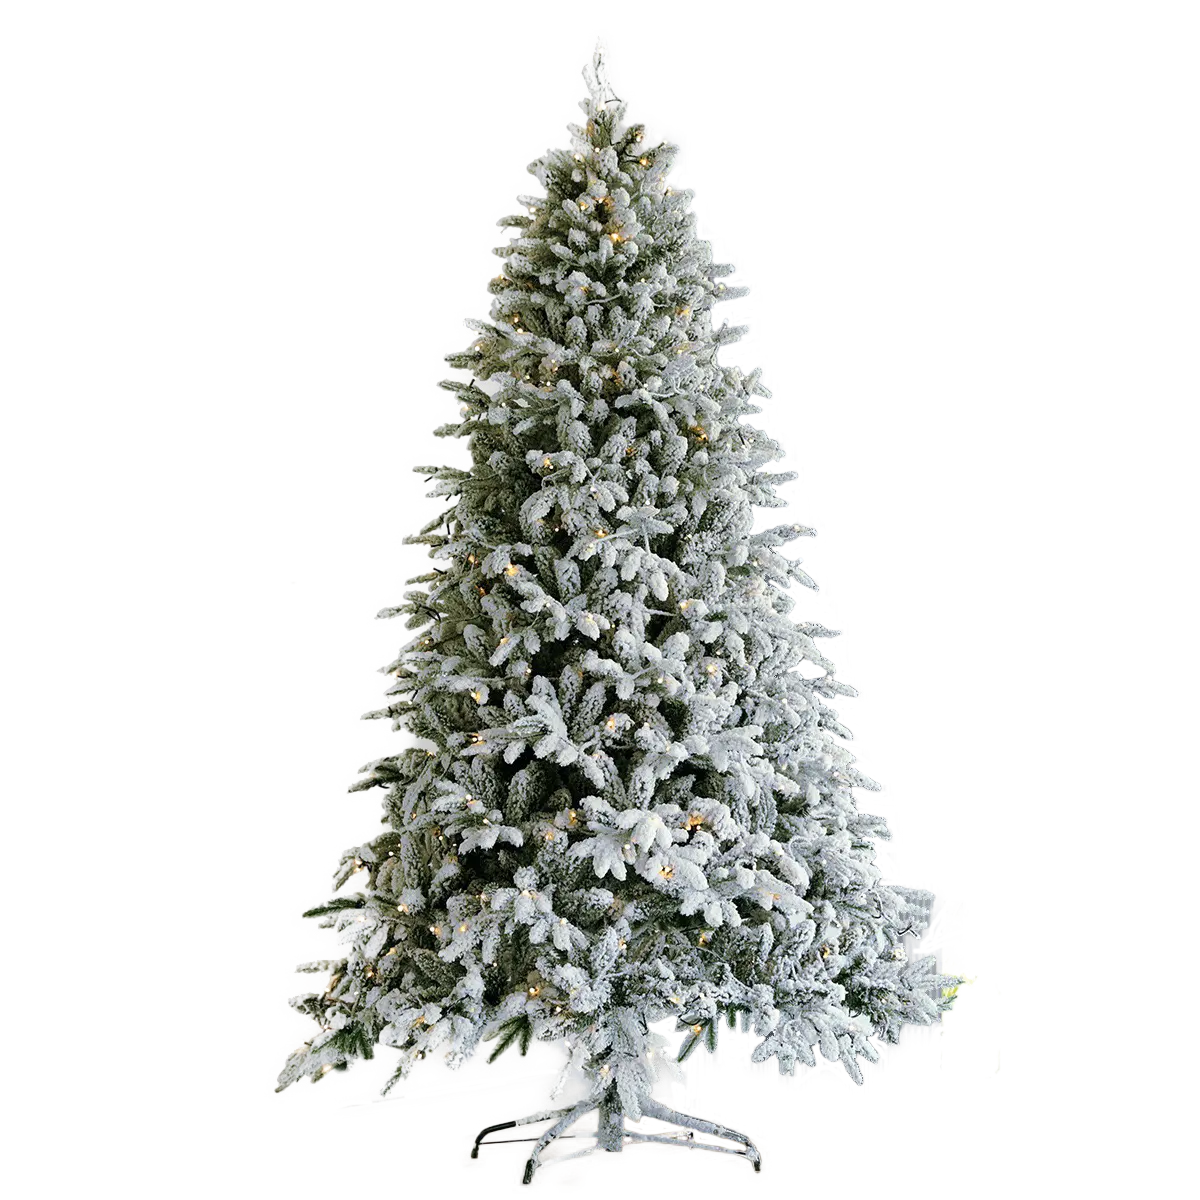 Árvore de natal decorativa, enfeite de árvore para decoração de natal, festa de natal